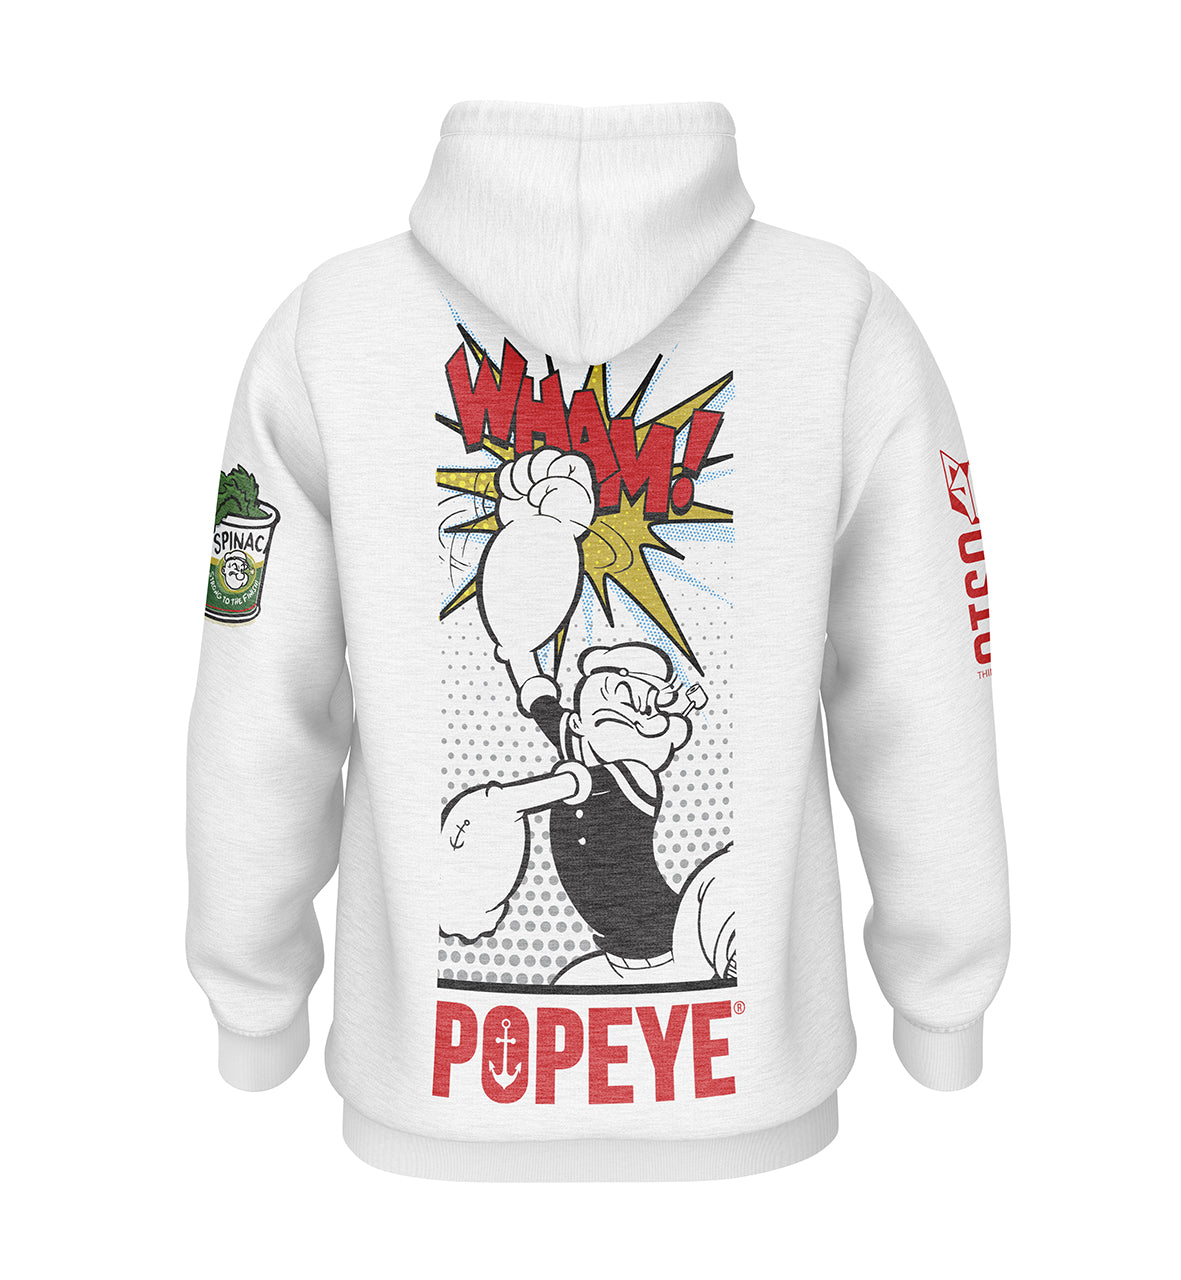 Dessuadora - Popeye Pop Art